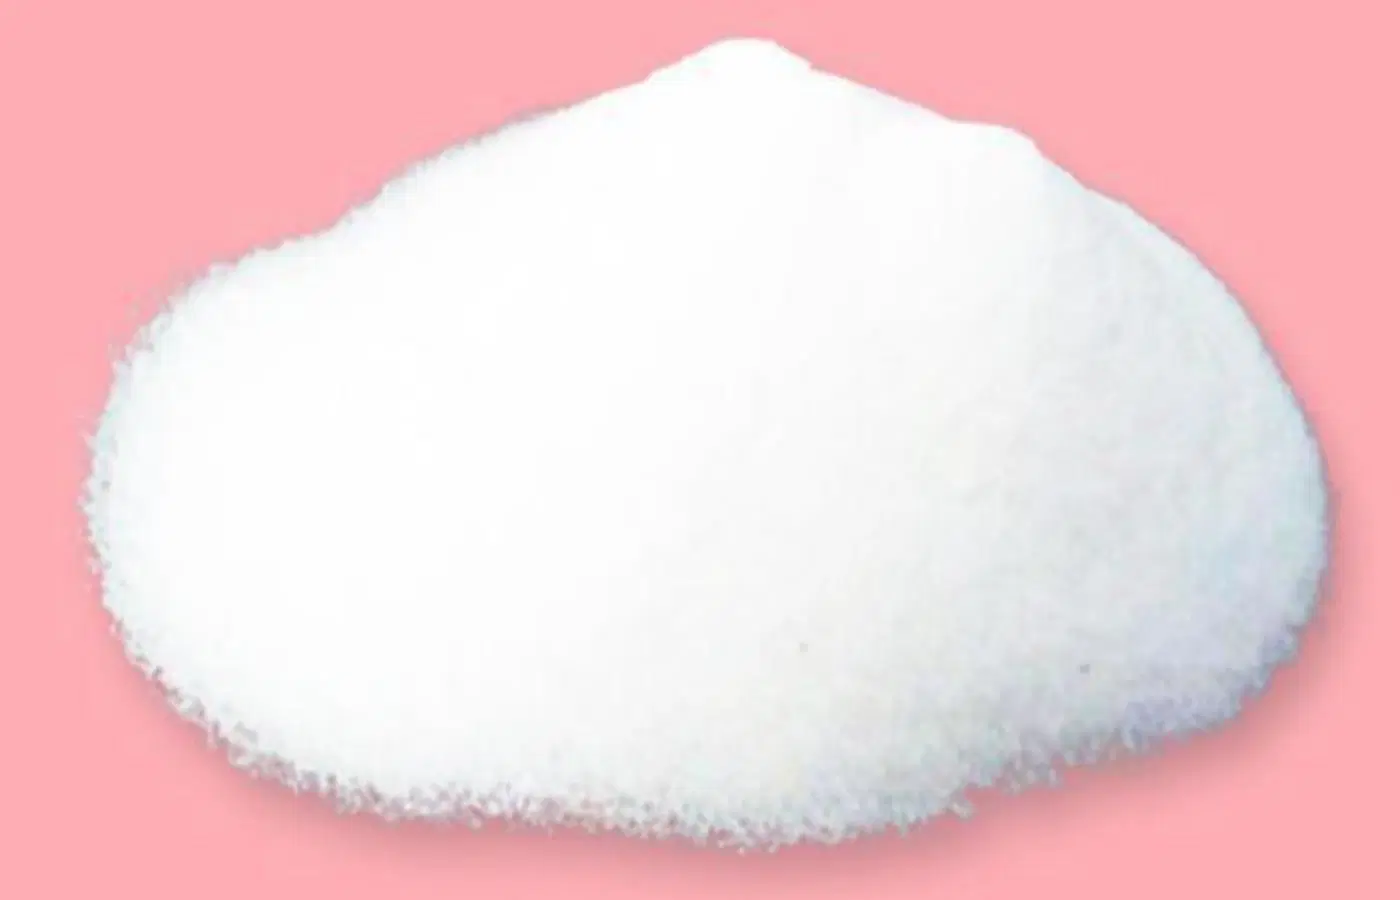 Al día de la medicina de la materia prima de copolímero Sucrose-Epichlorohydrin Grado de pureza del 99% Nº CAS 26873-85-8